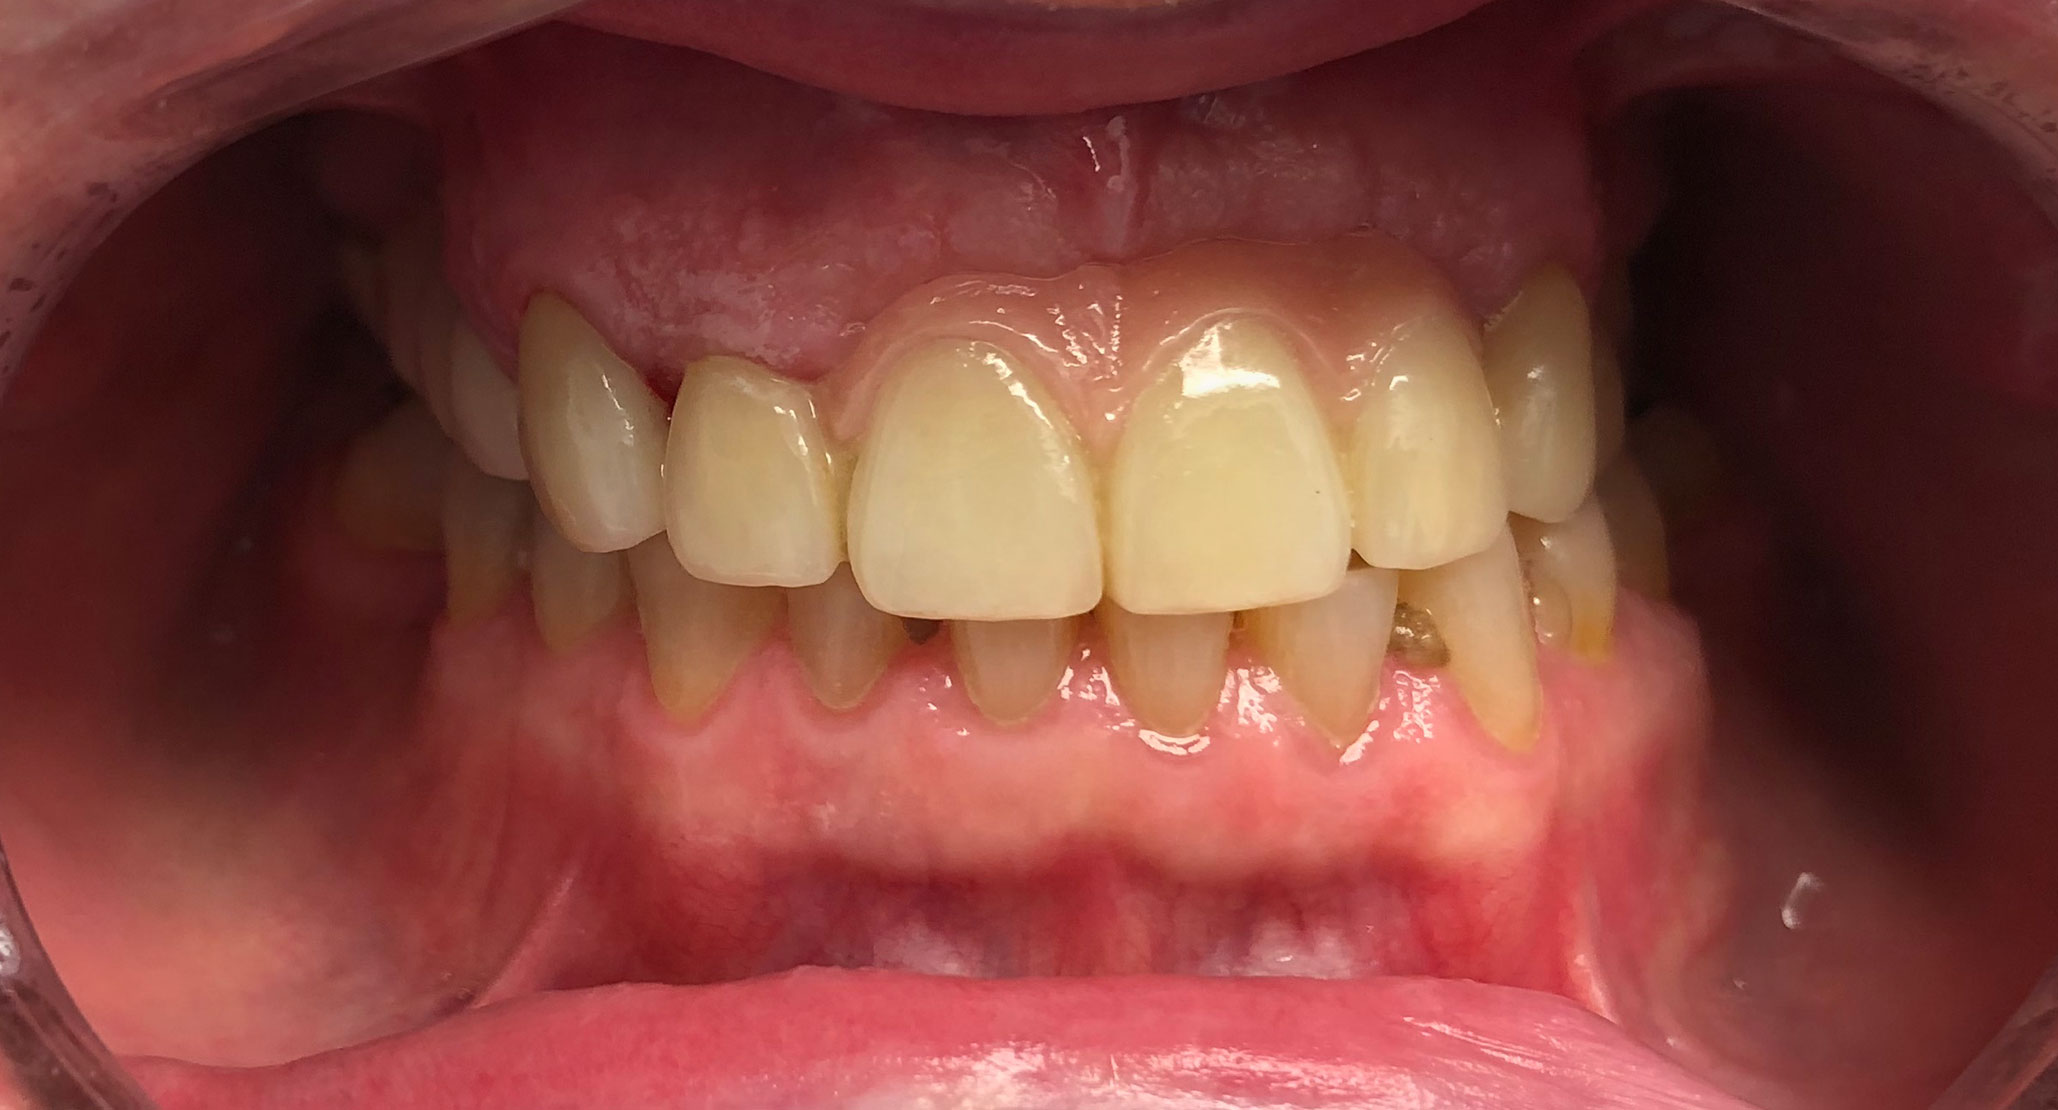 3 Dental Implants After Durham Dental Solutions